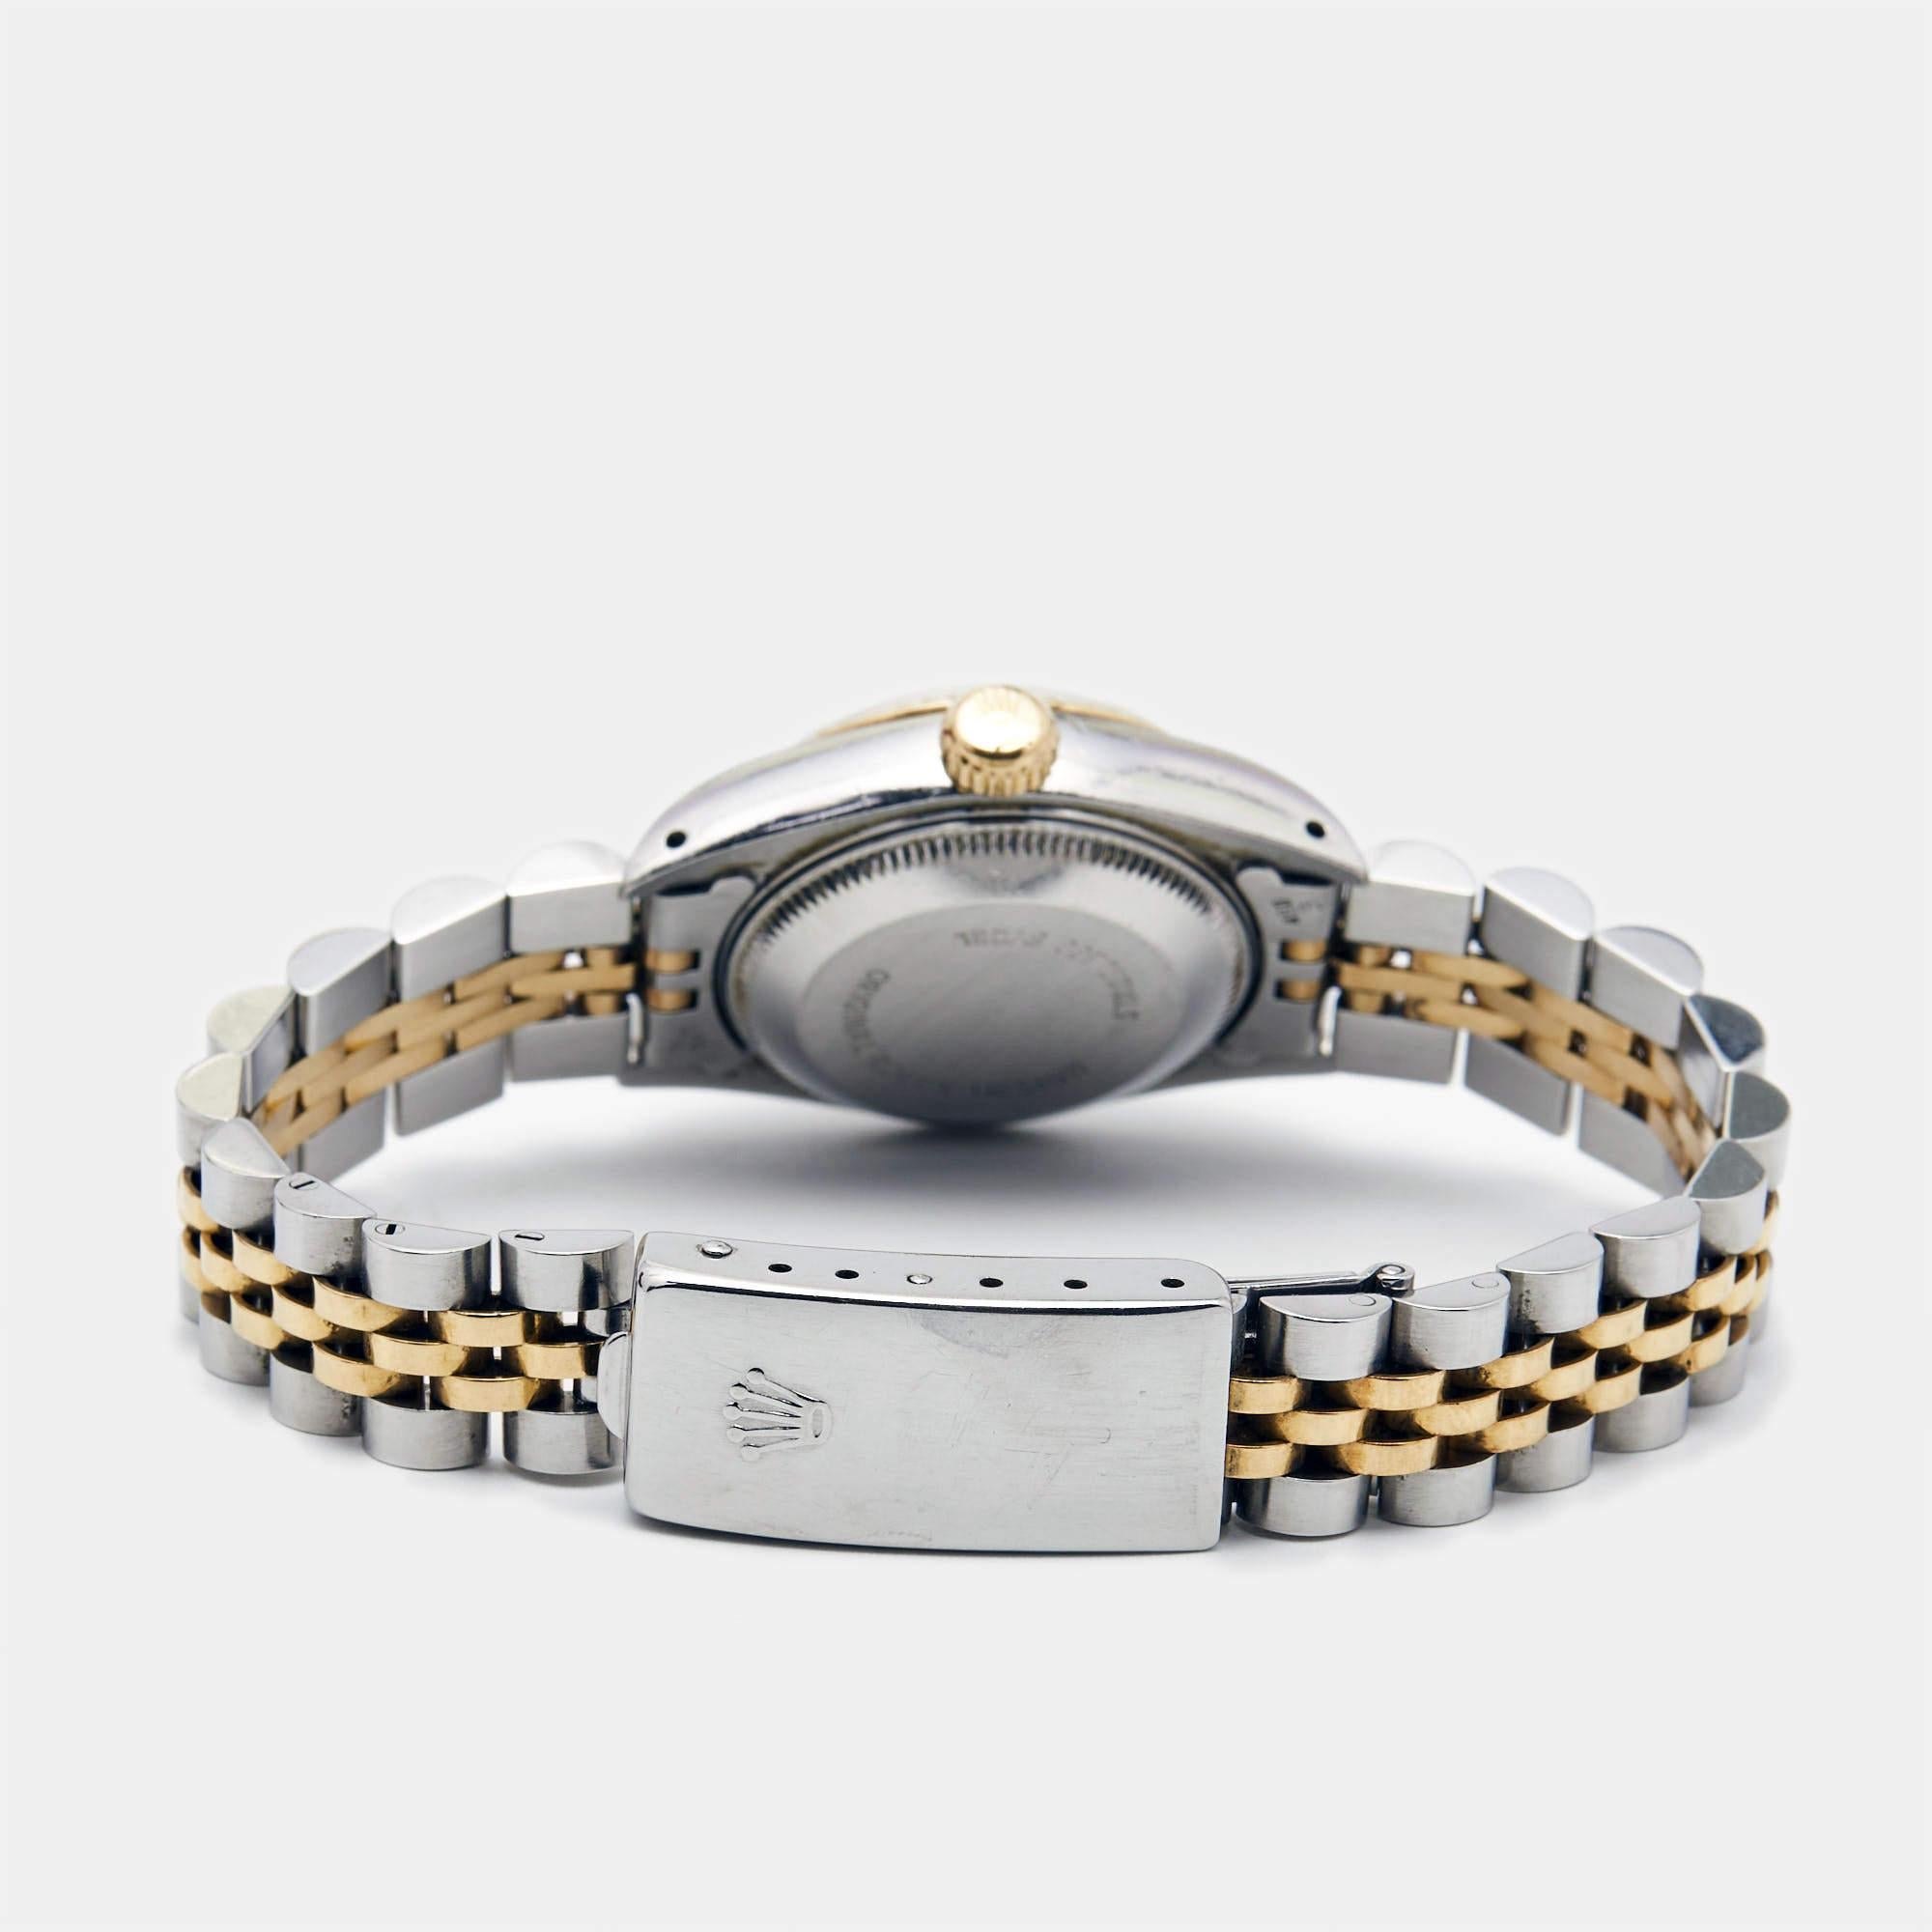 Rehaussez votre collection de montres avec un authentique chef-d'œuvre de Rolex. La Datejust 69173 bénéficie d'un savoir-faire exquis, d'un design intemporel et d'un héritage d'excellence horlogère.

Comprend : Étui original

